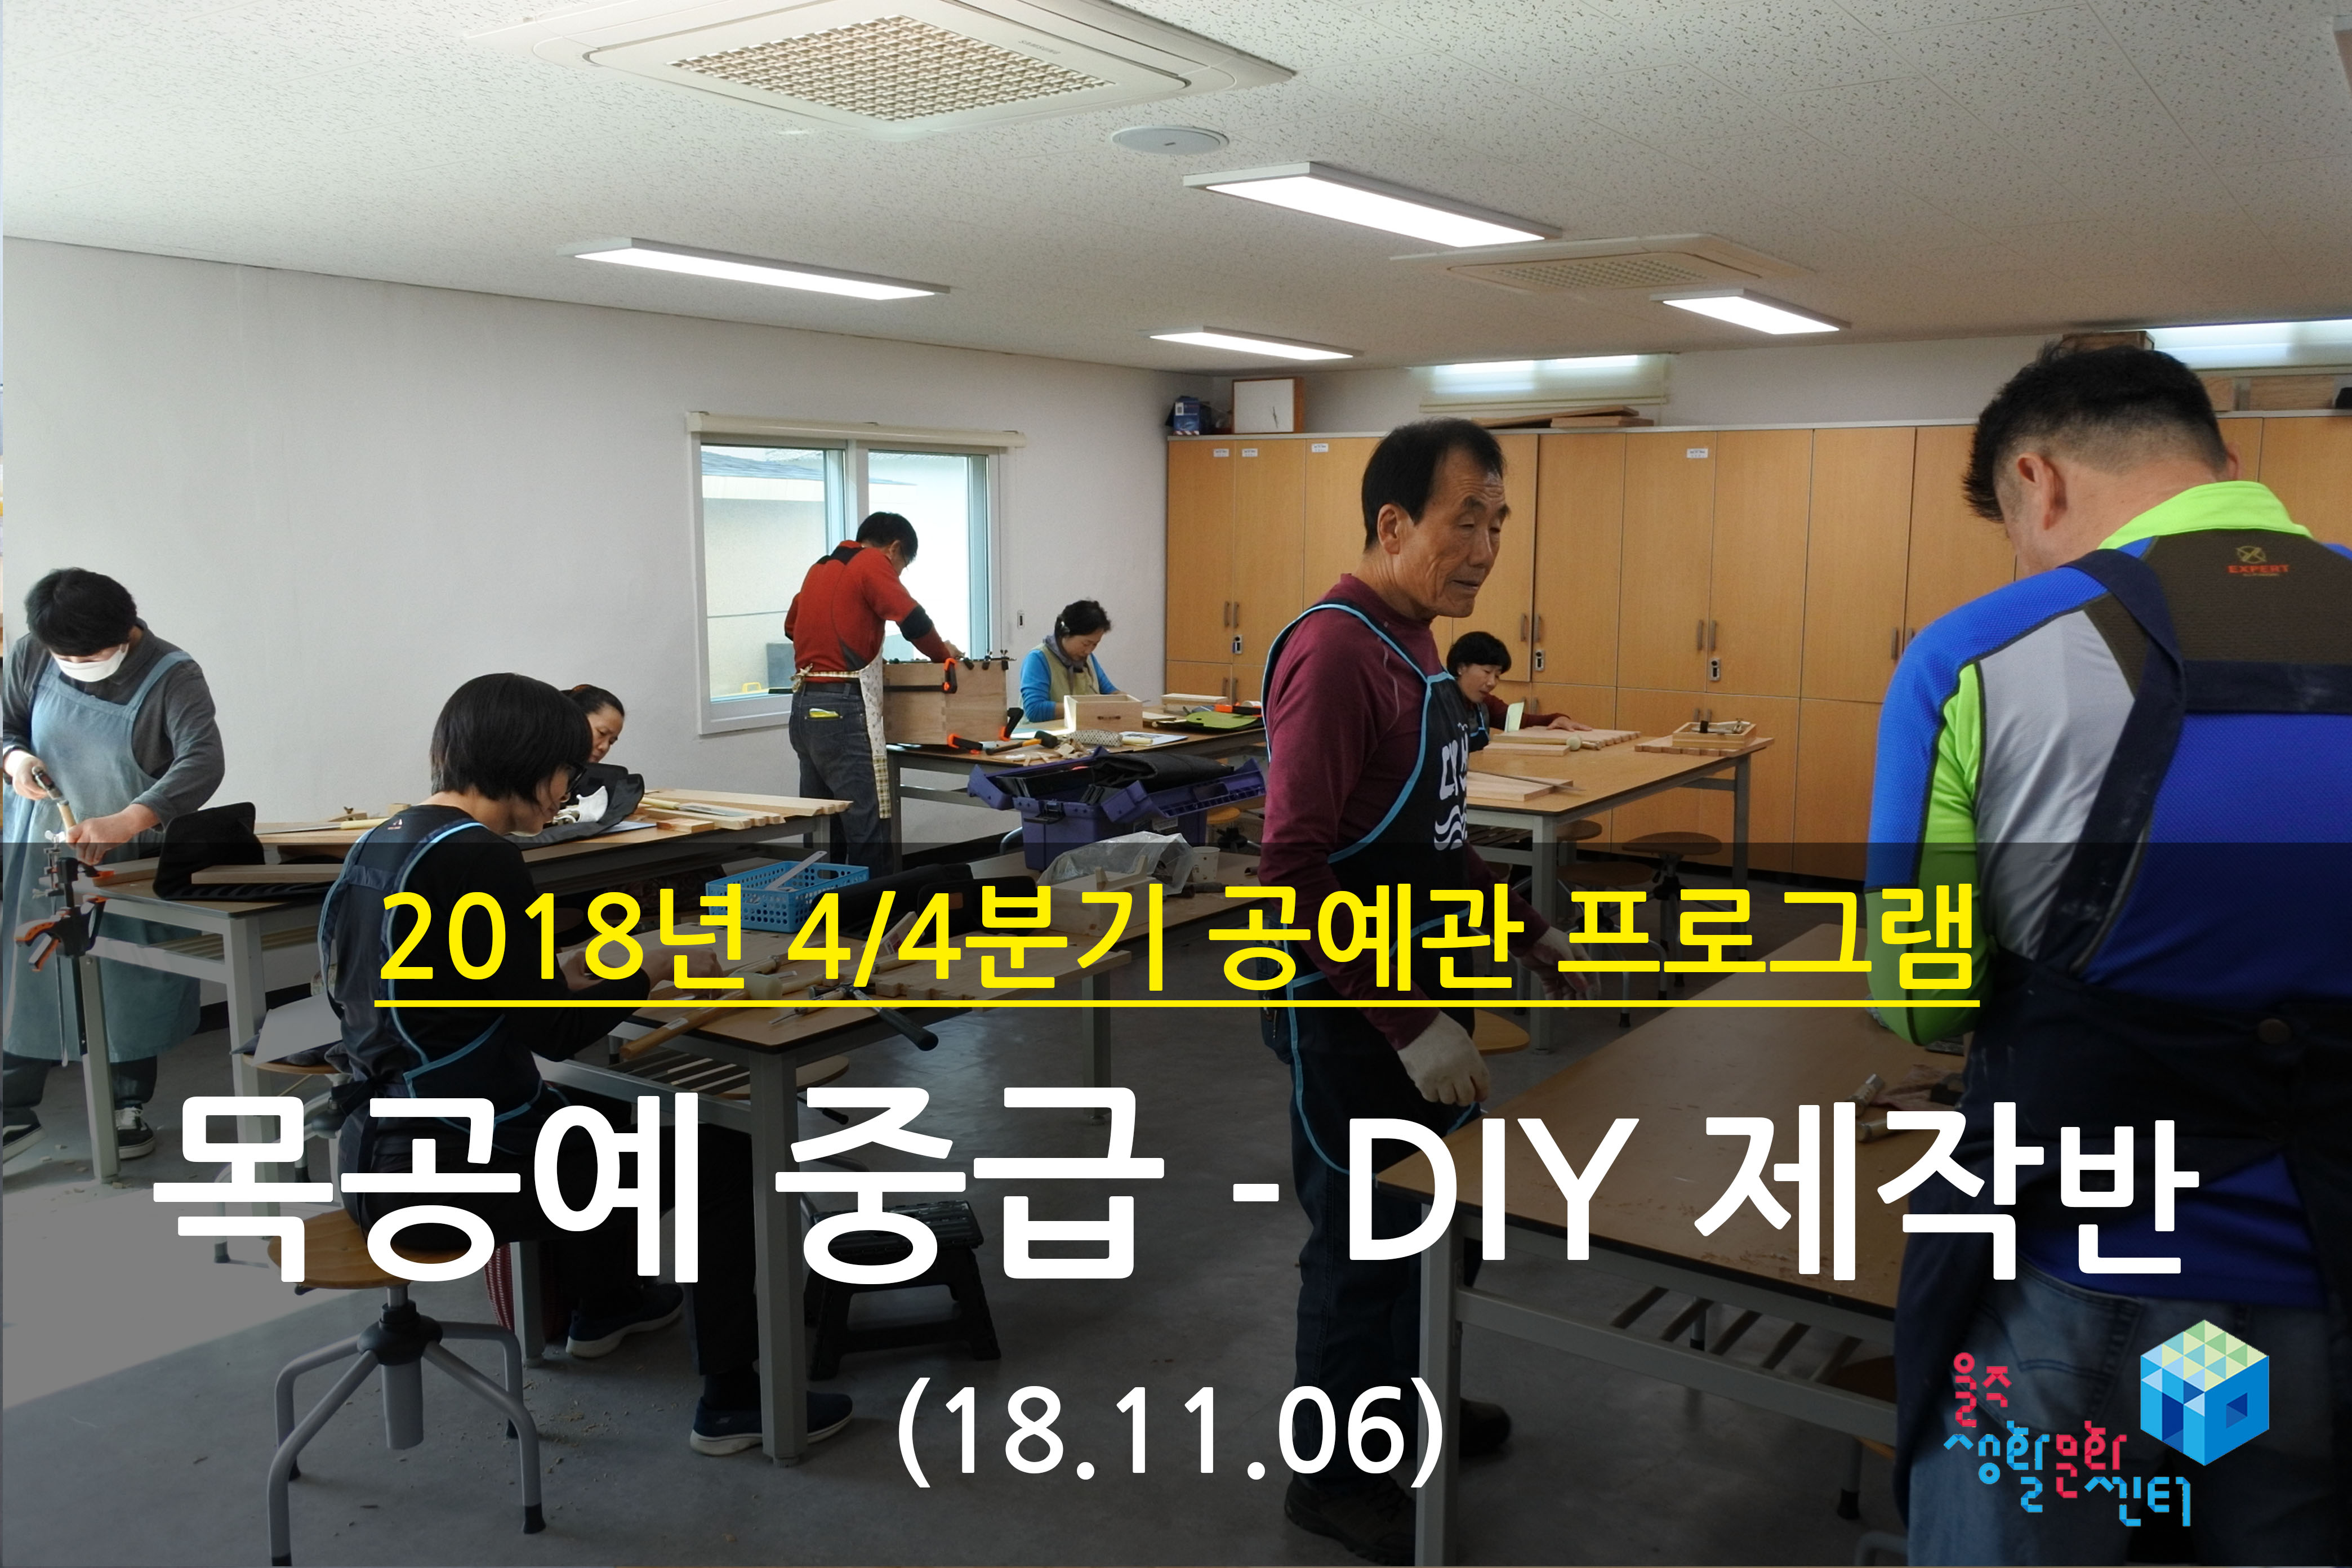 2018.11.06 _ 목공예 중급 - DIY 제작반 _ 4/4분기 5주차 수업